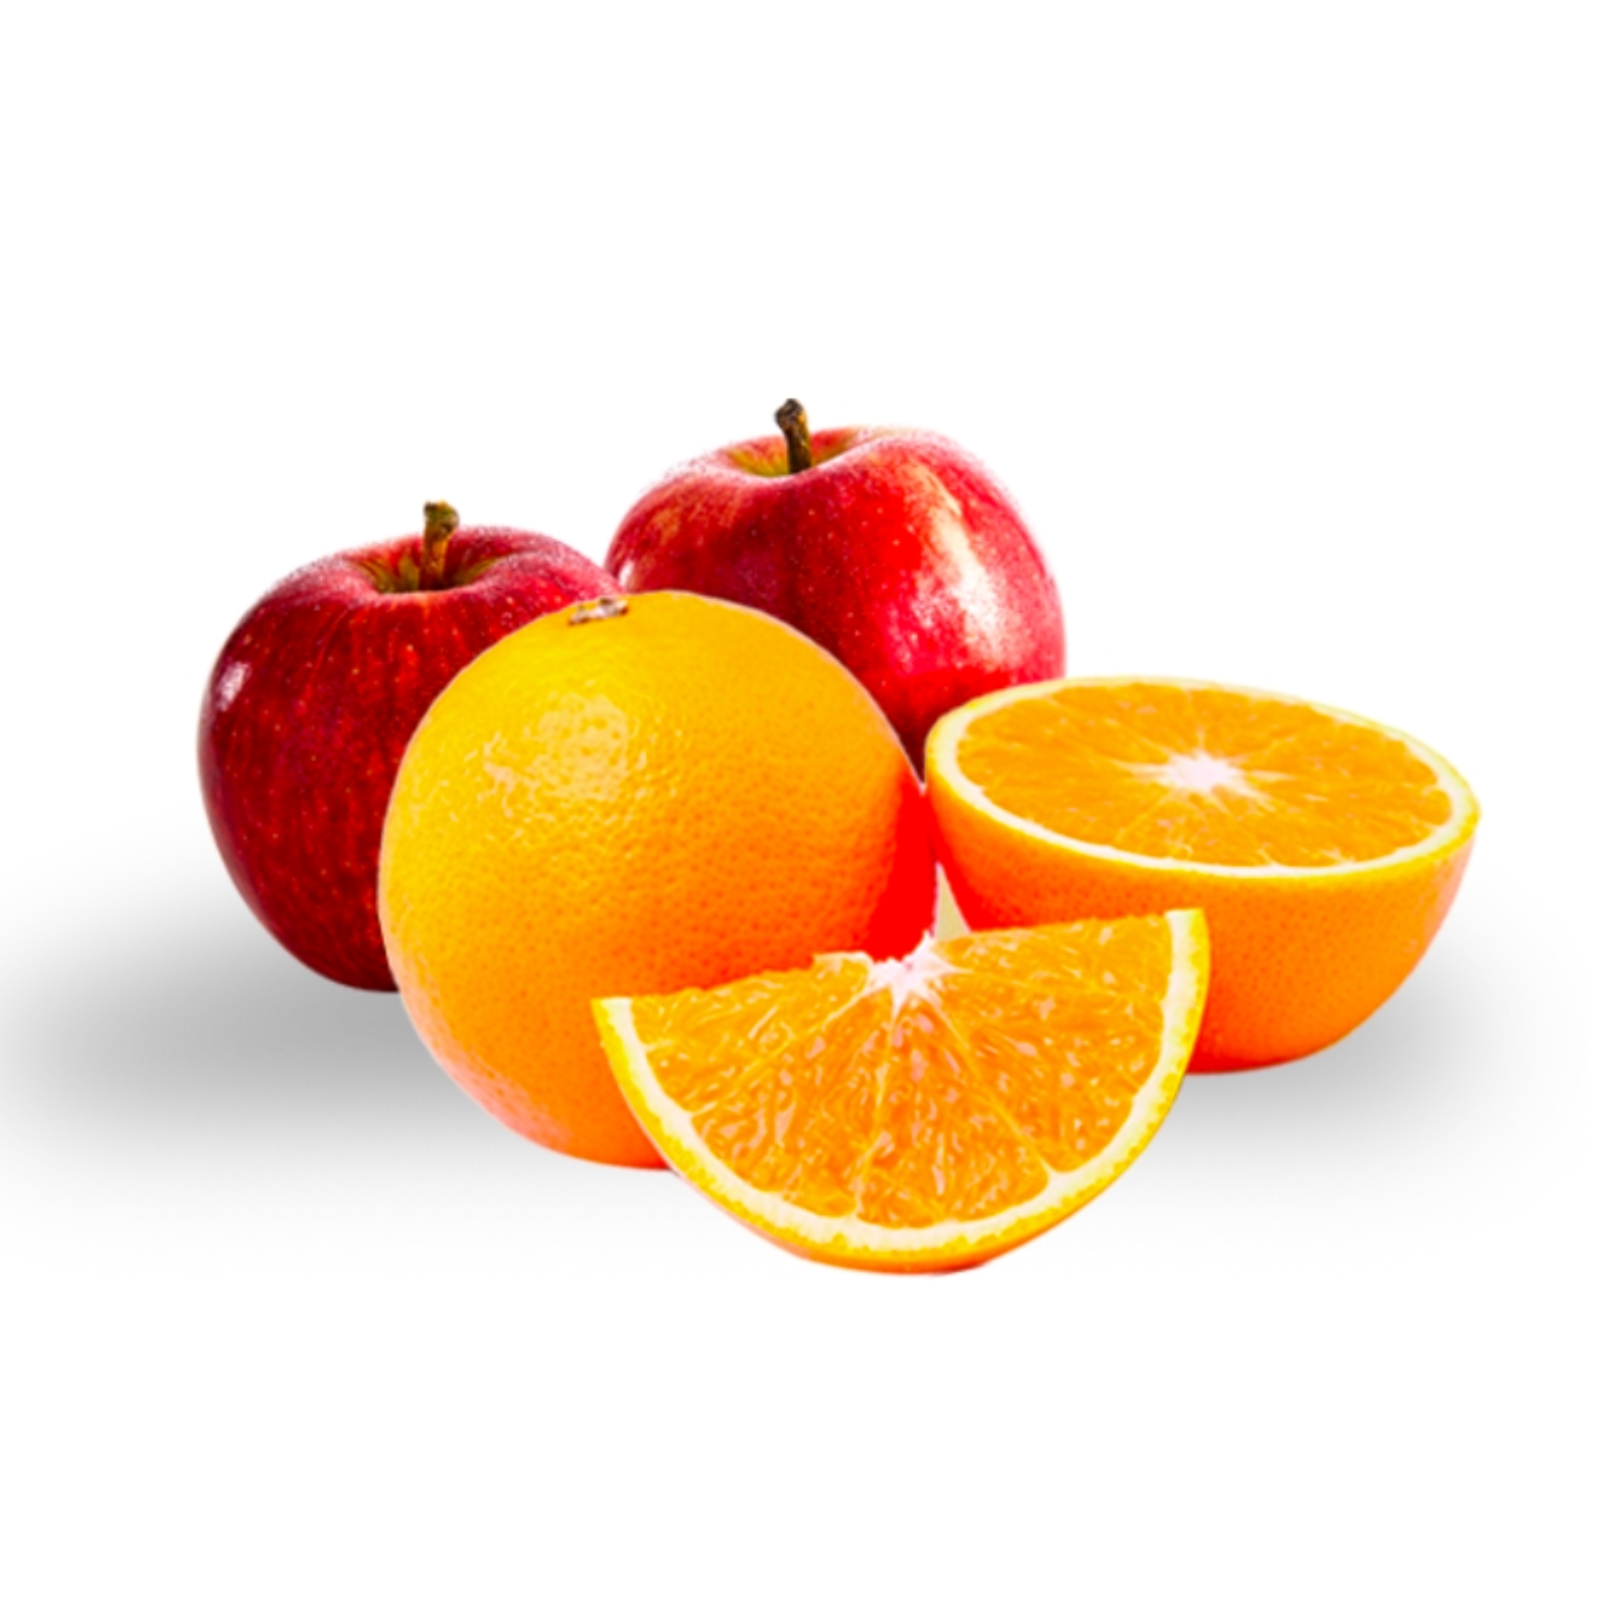 Buy Orange Apple Online NZ